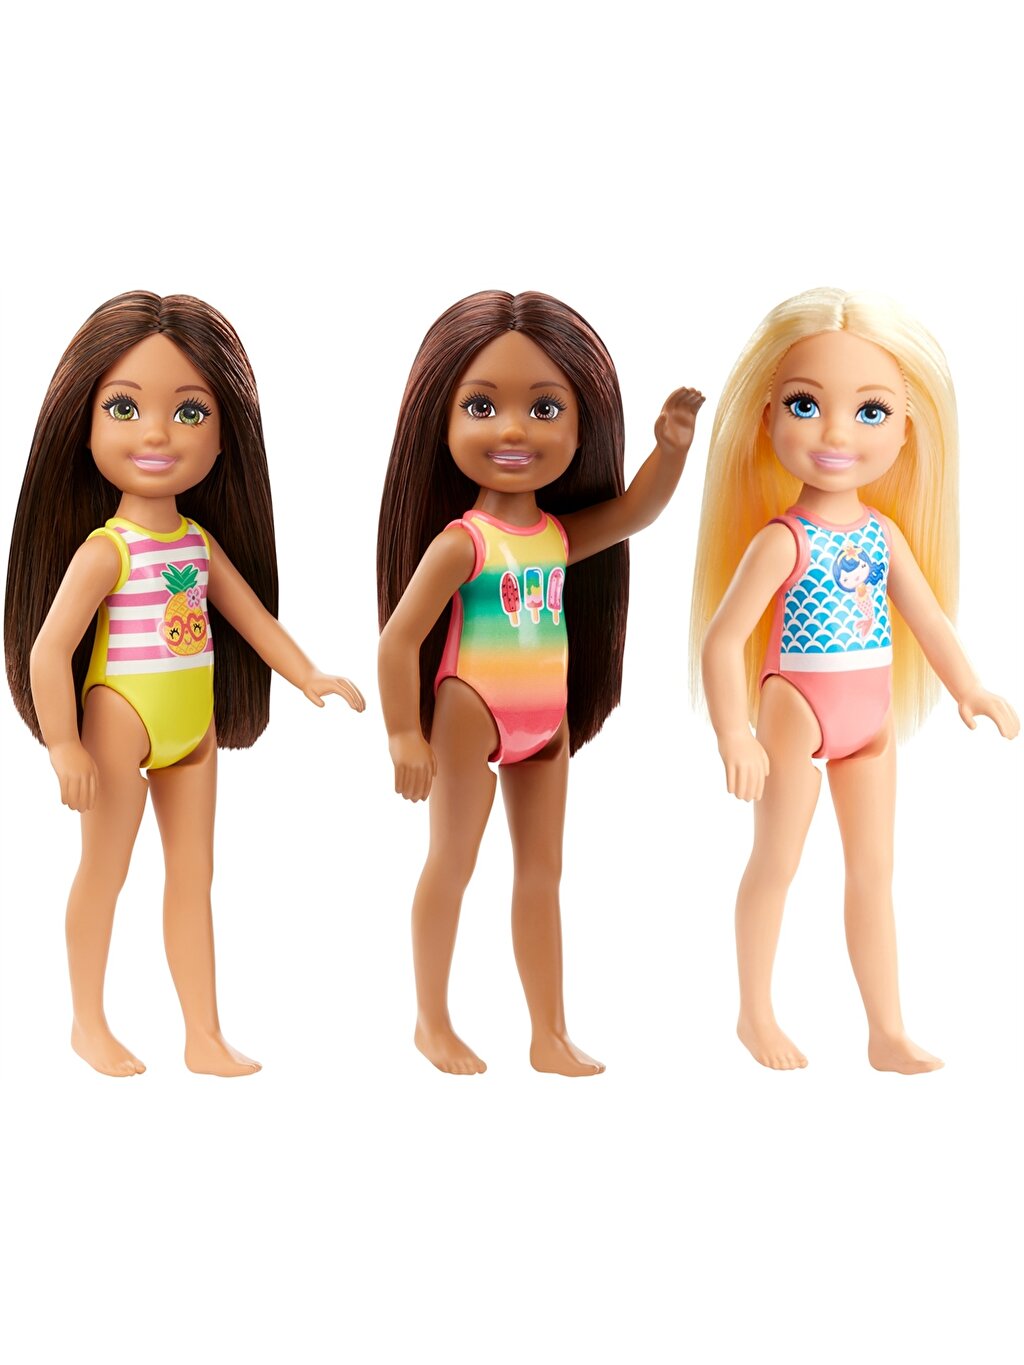 Barbie Girls Clube: Para quem não conhece